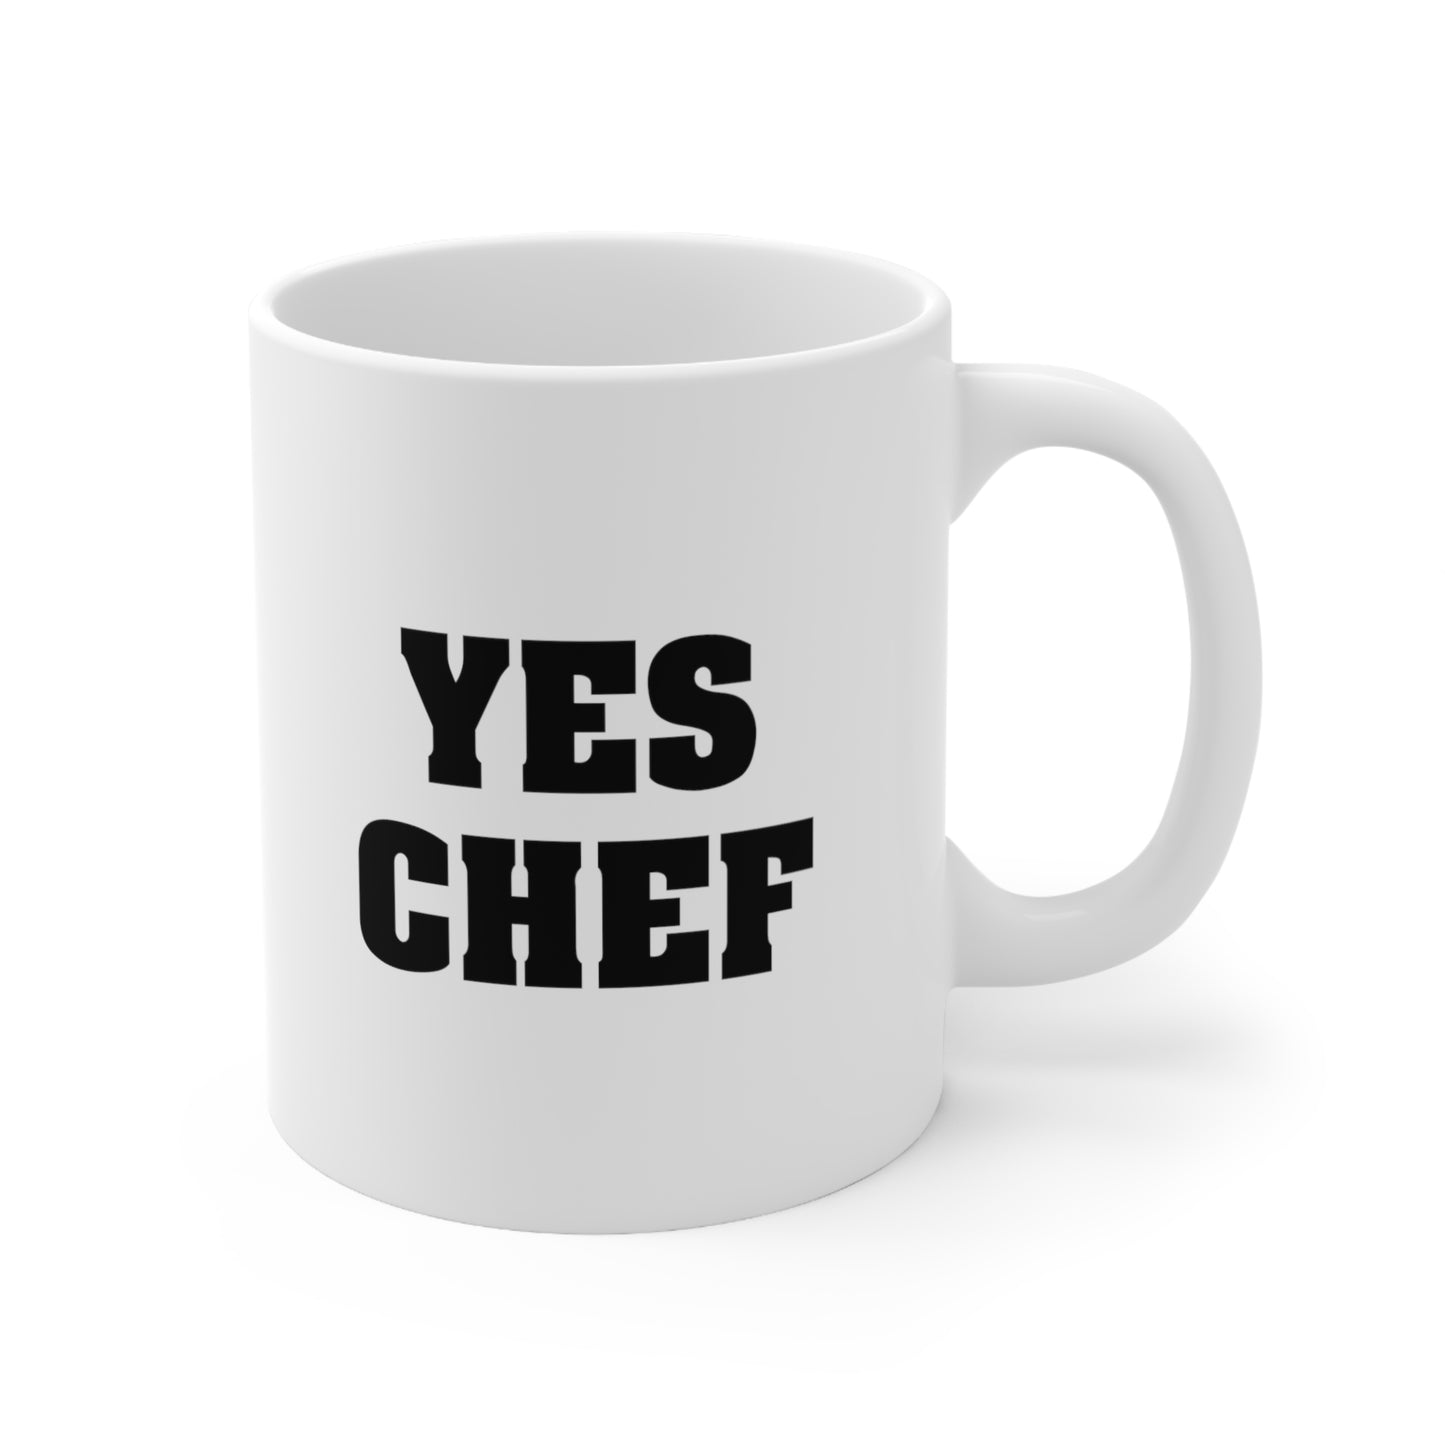 Yes Chef Coffee Mug 11oz